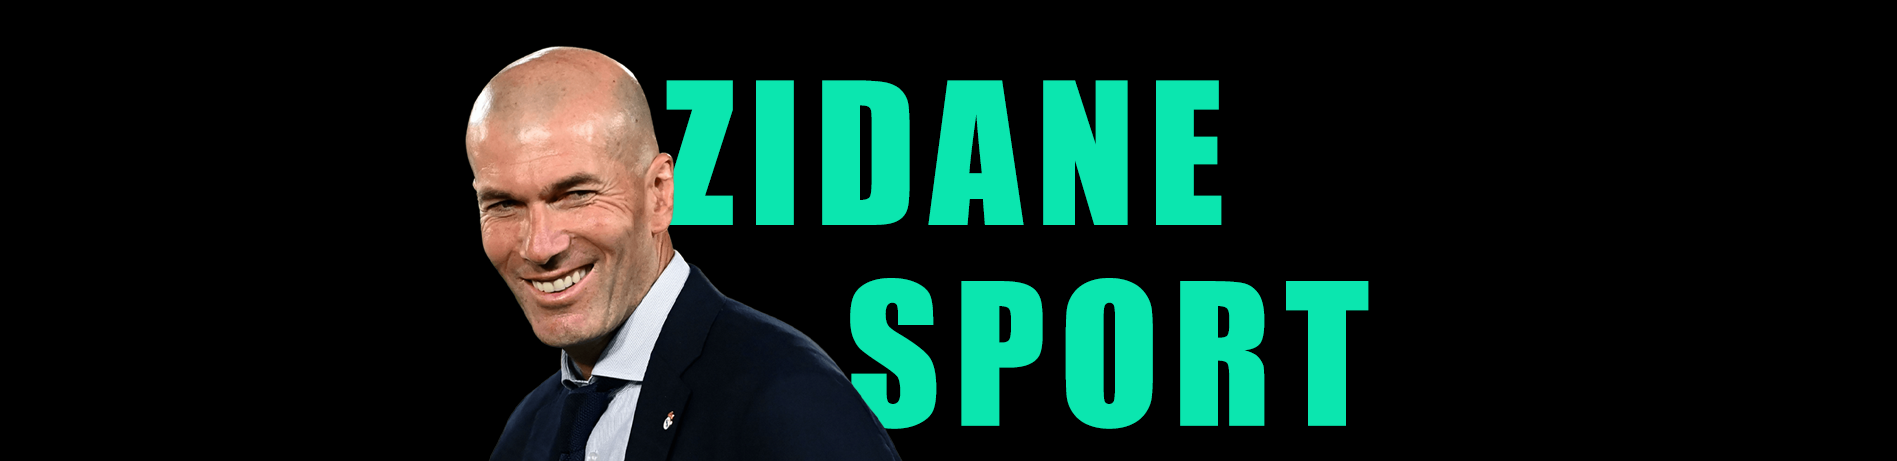 Zidane Sport